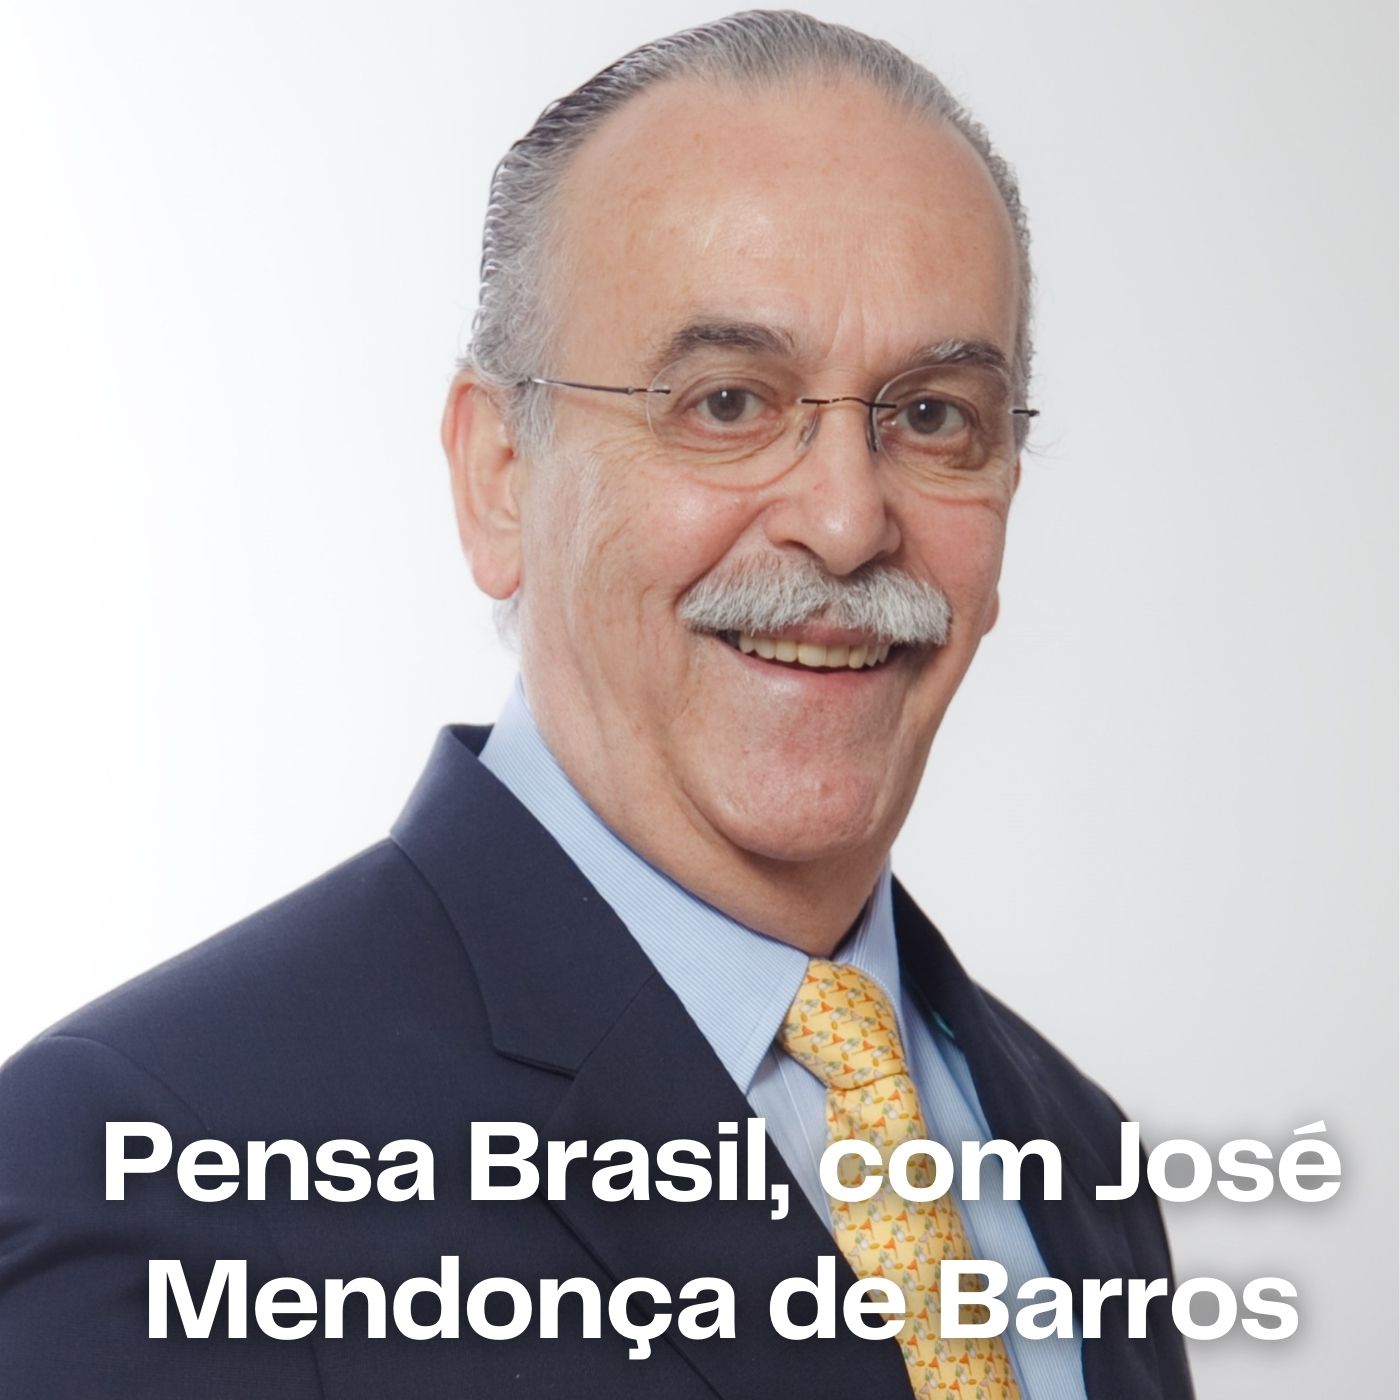 23/06/2020 – José Roberto Mendonça de Barros aponta quatro mudanças no mercado que deverão se consolidar após a pandemia de Covid-19